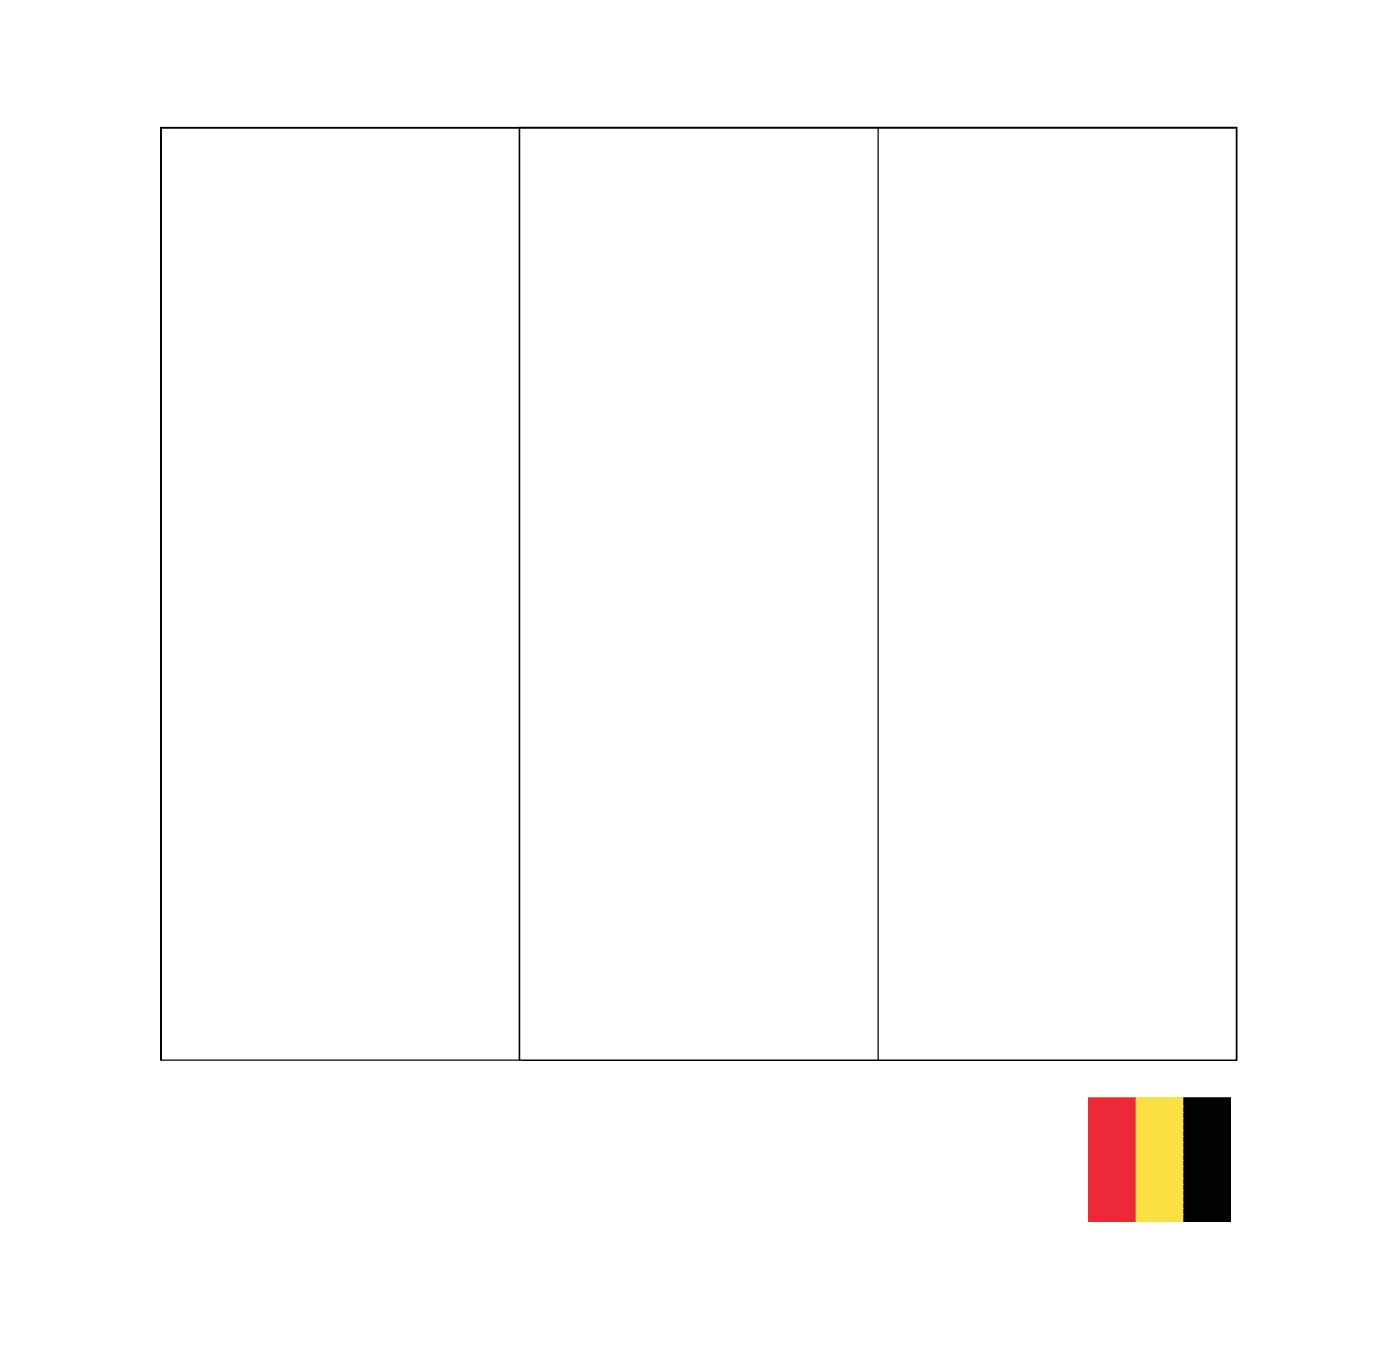  बेल्जियम का फ्लैग 